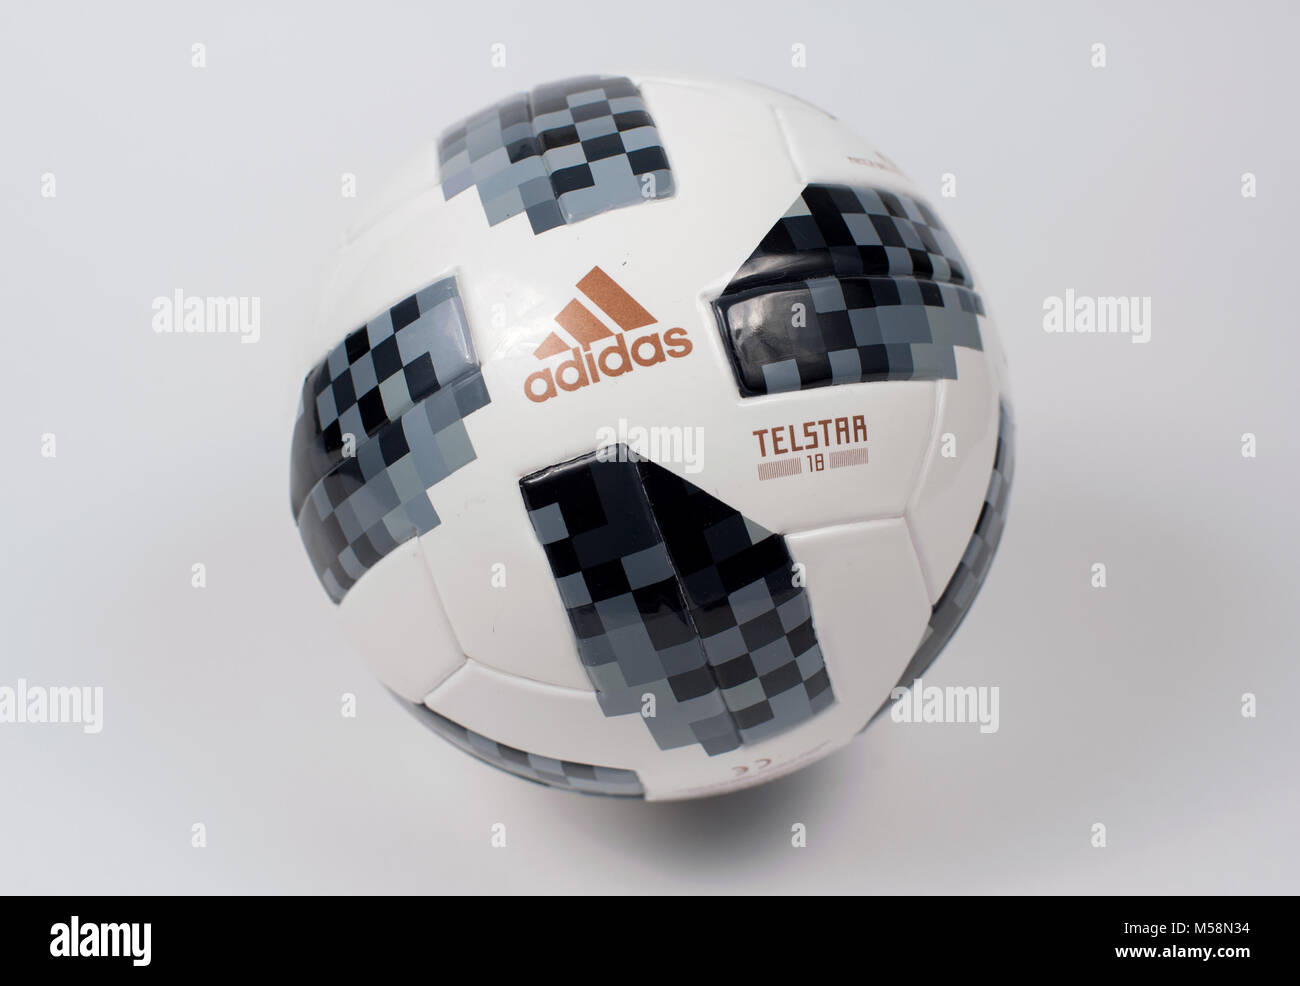 Es una suerte que Incompatible Nublado 2 dic 2017 Moscú, Rusia el balón oficial de la Copa Mundial de la Fifa 2018  Adidas Telstar 18 Fotografía de stock - Alamy